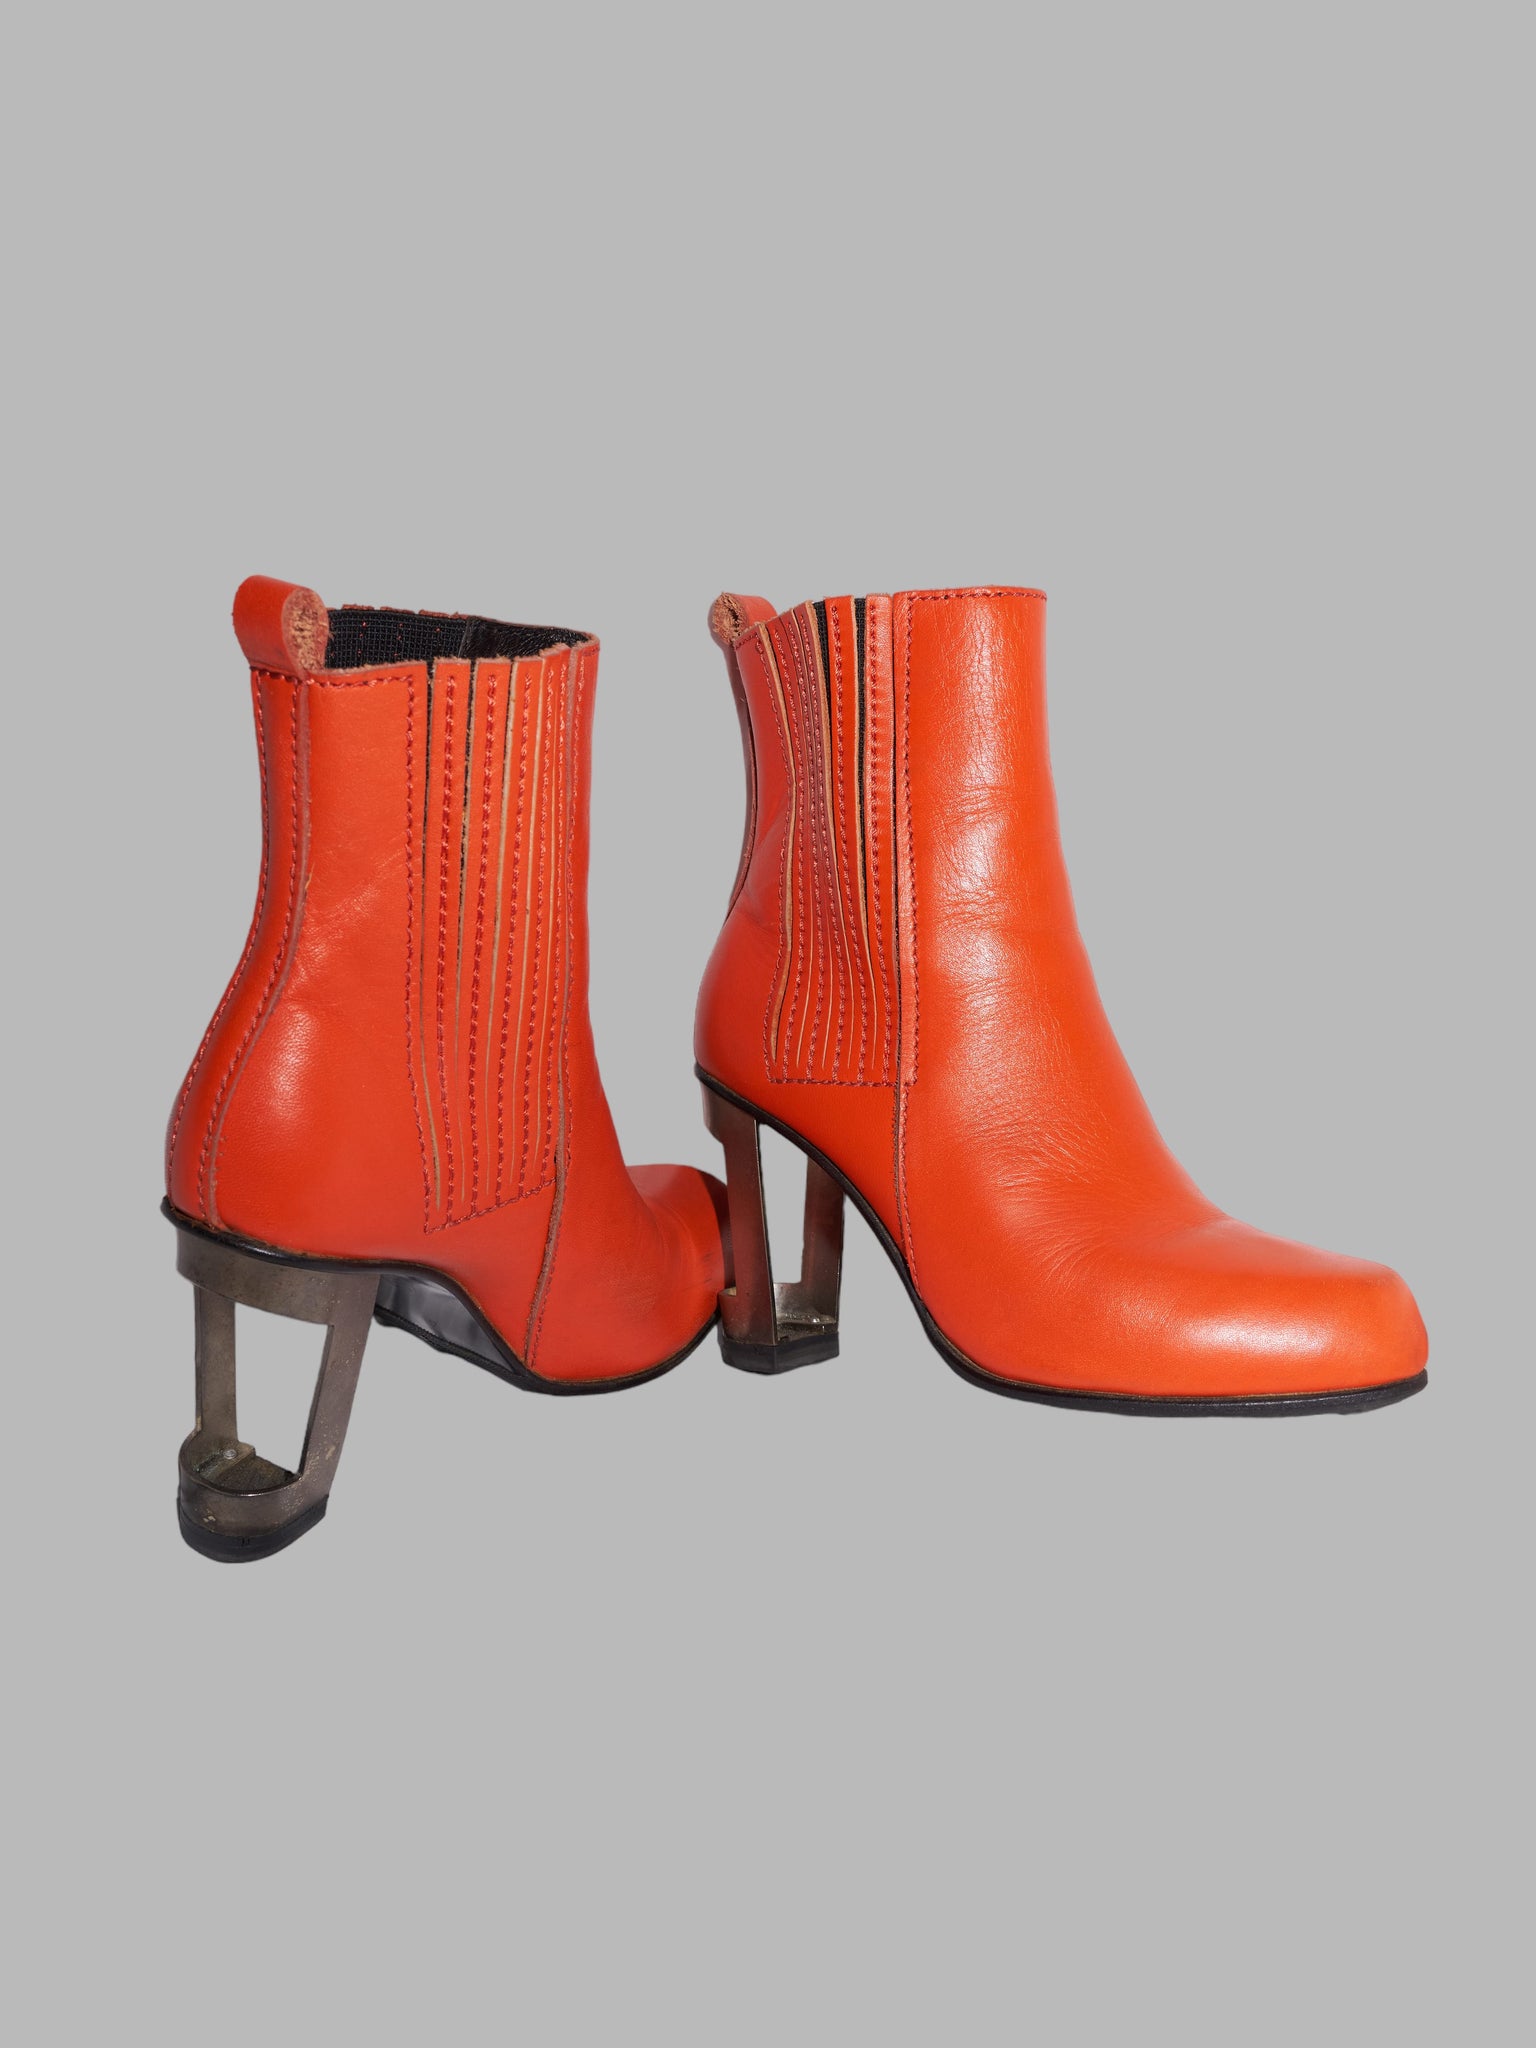 Dirk Bikkembergs 1990s orange leather steel heel cutout high heel boots - UK 4